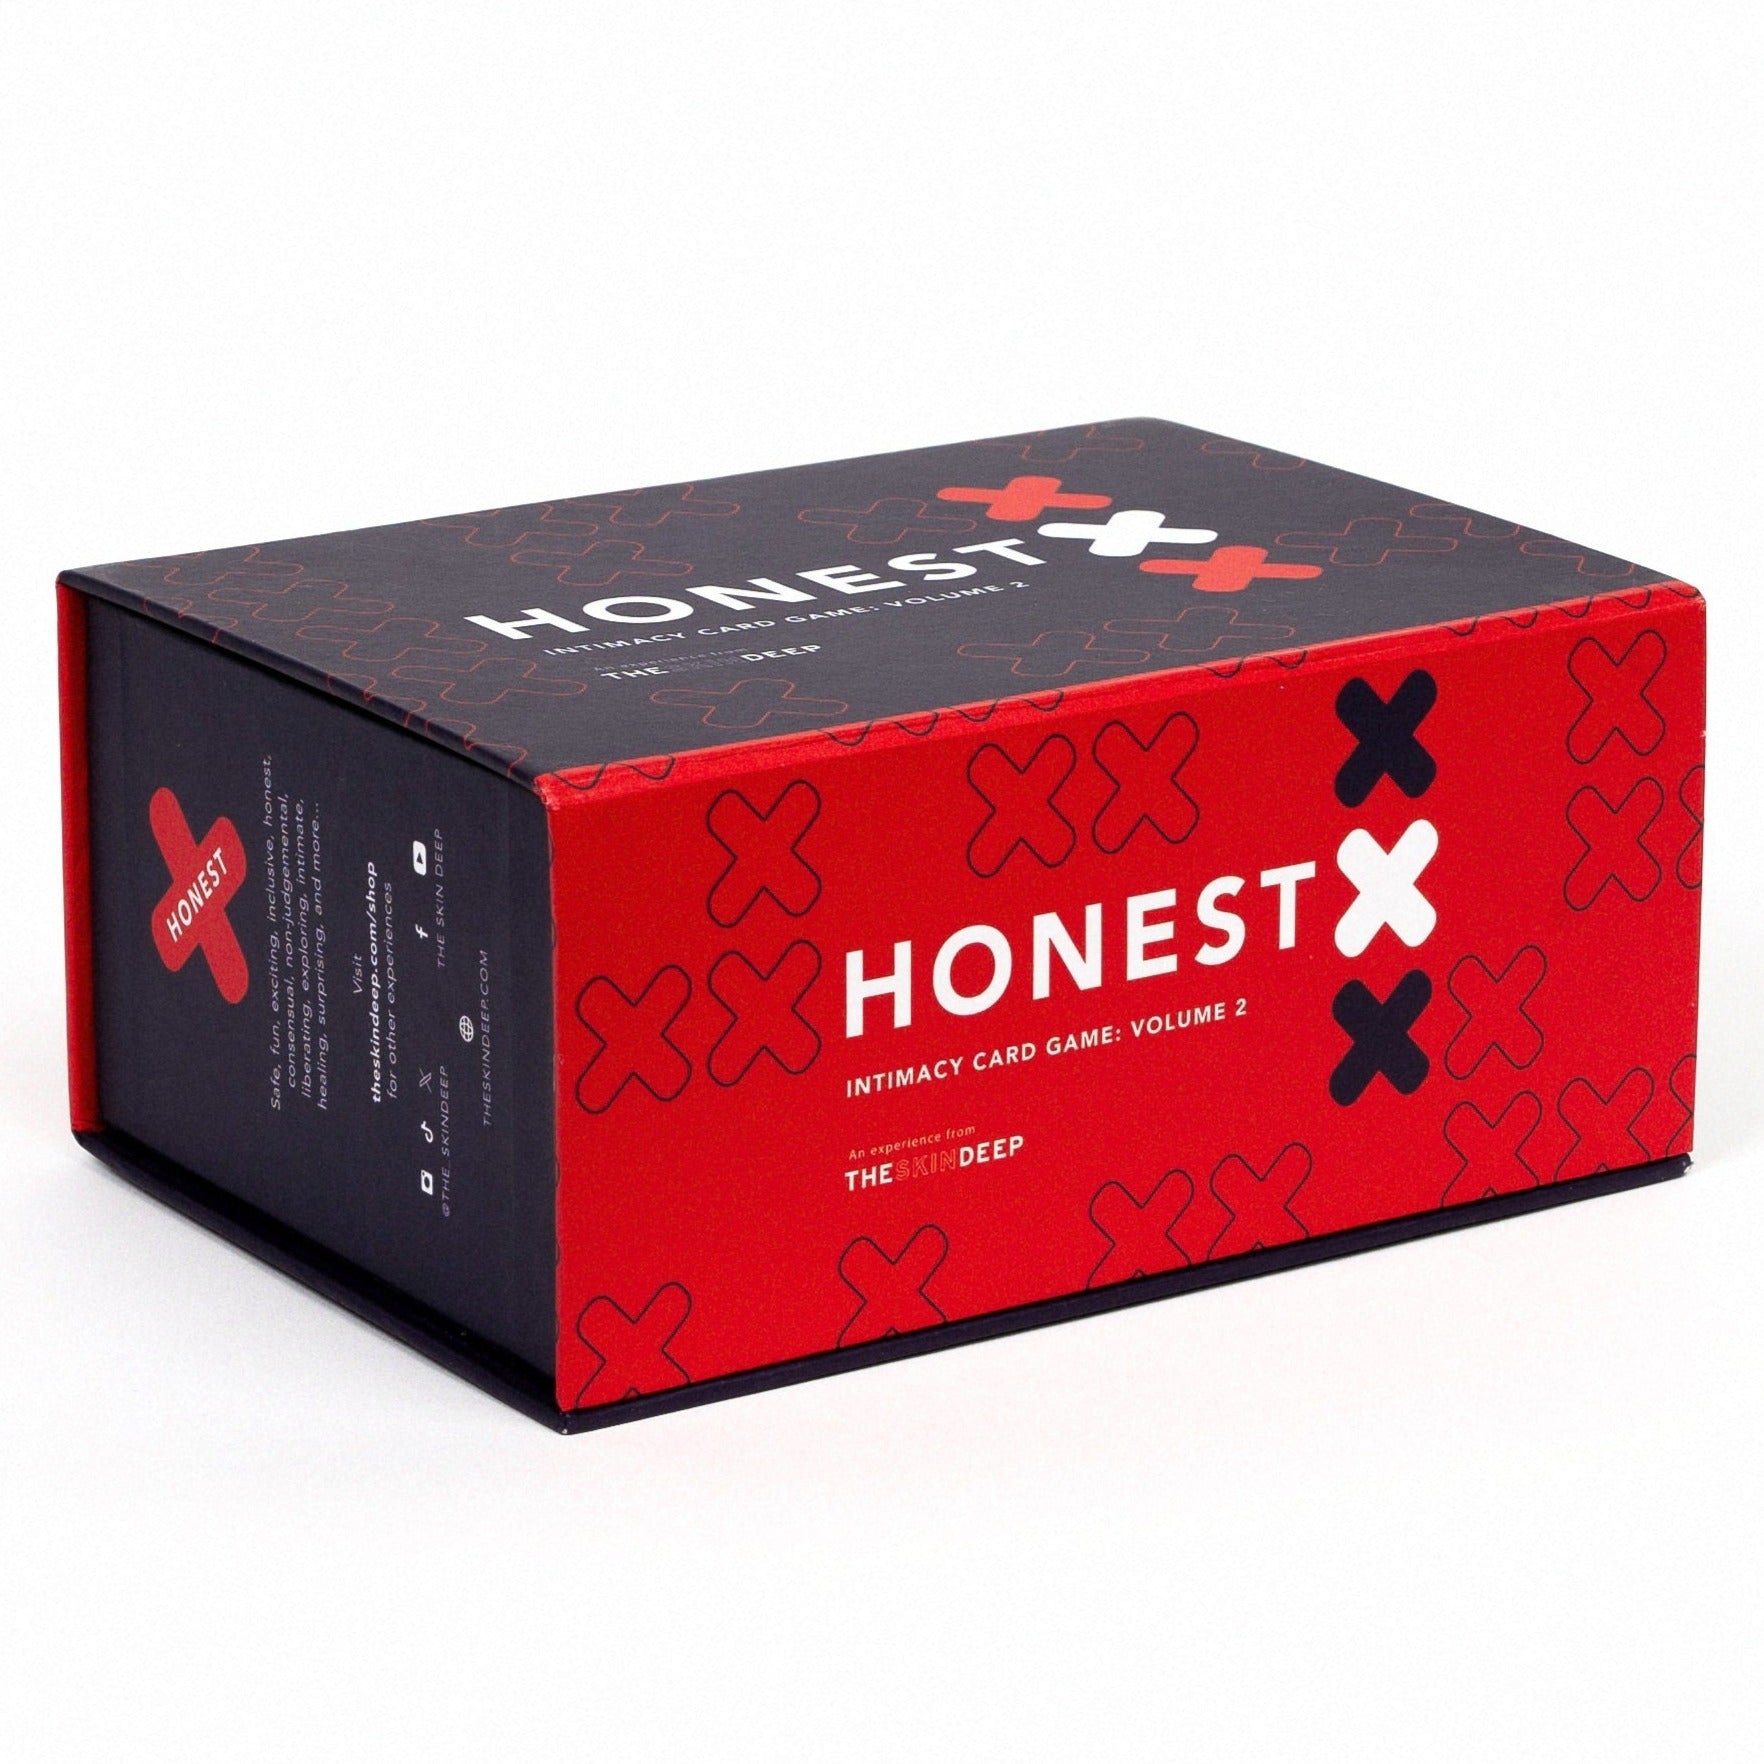 Honest X: Volume 2 Bottom Cover